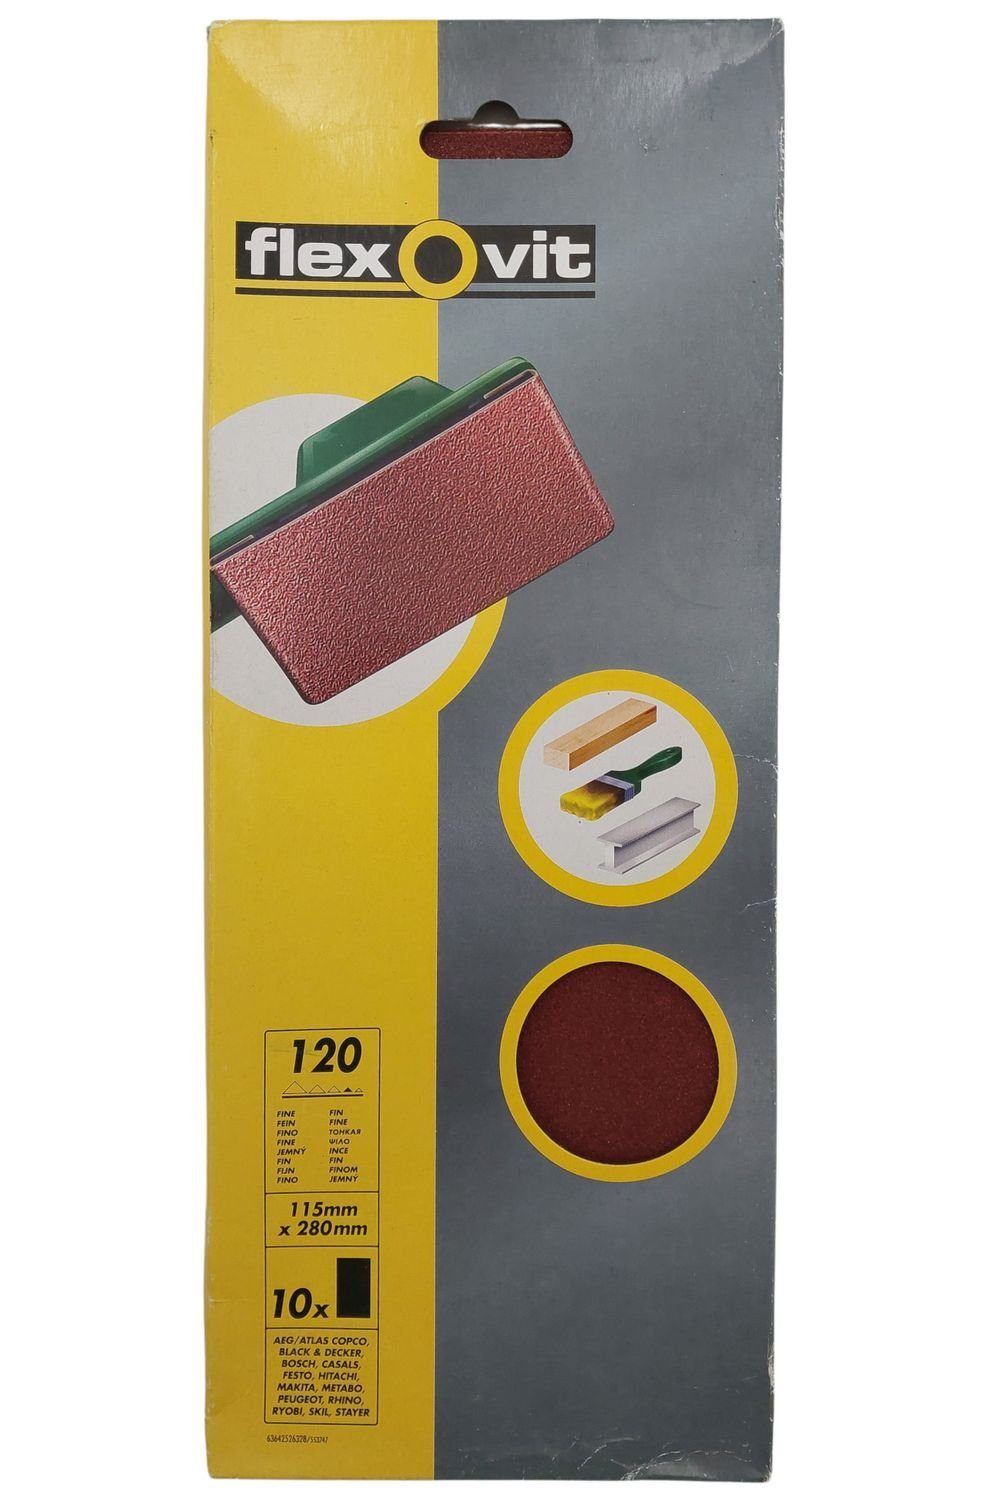 flexovit Schleifpapier 10 STK Schleifpapier für Schwingschleifer Körnung 120 115mm x 280mm se, (10 St)